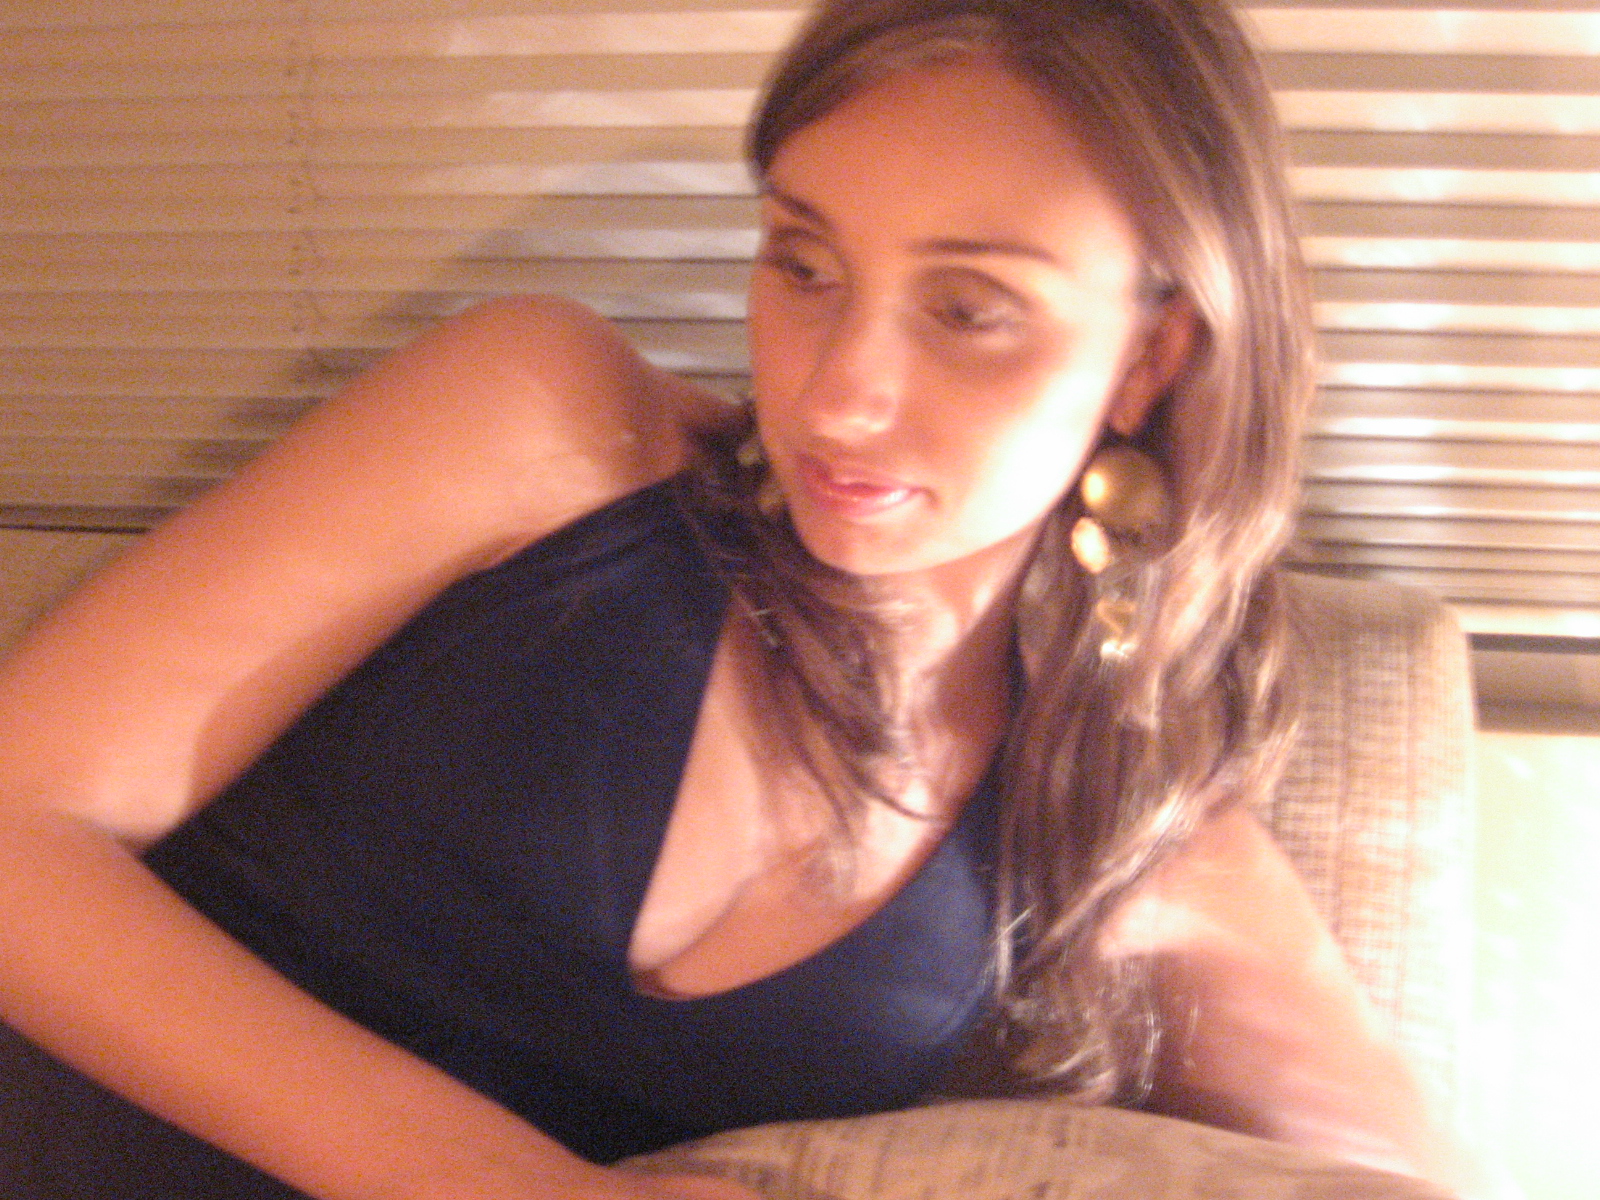 a woman wearing earrings sits in front of a window